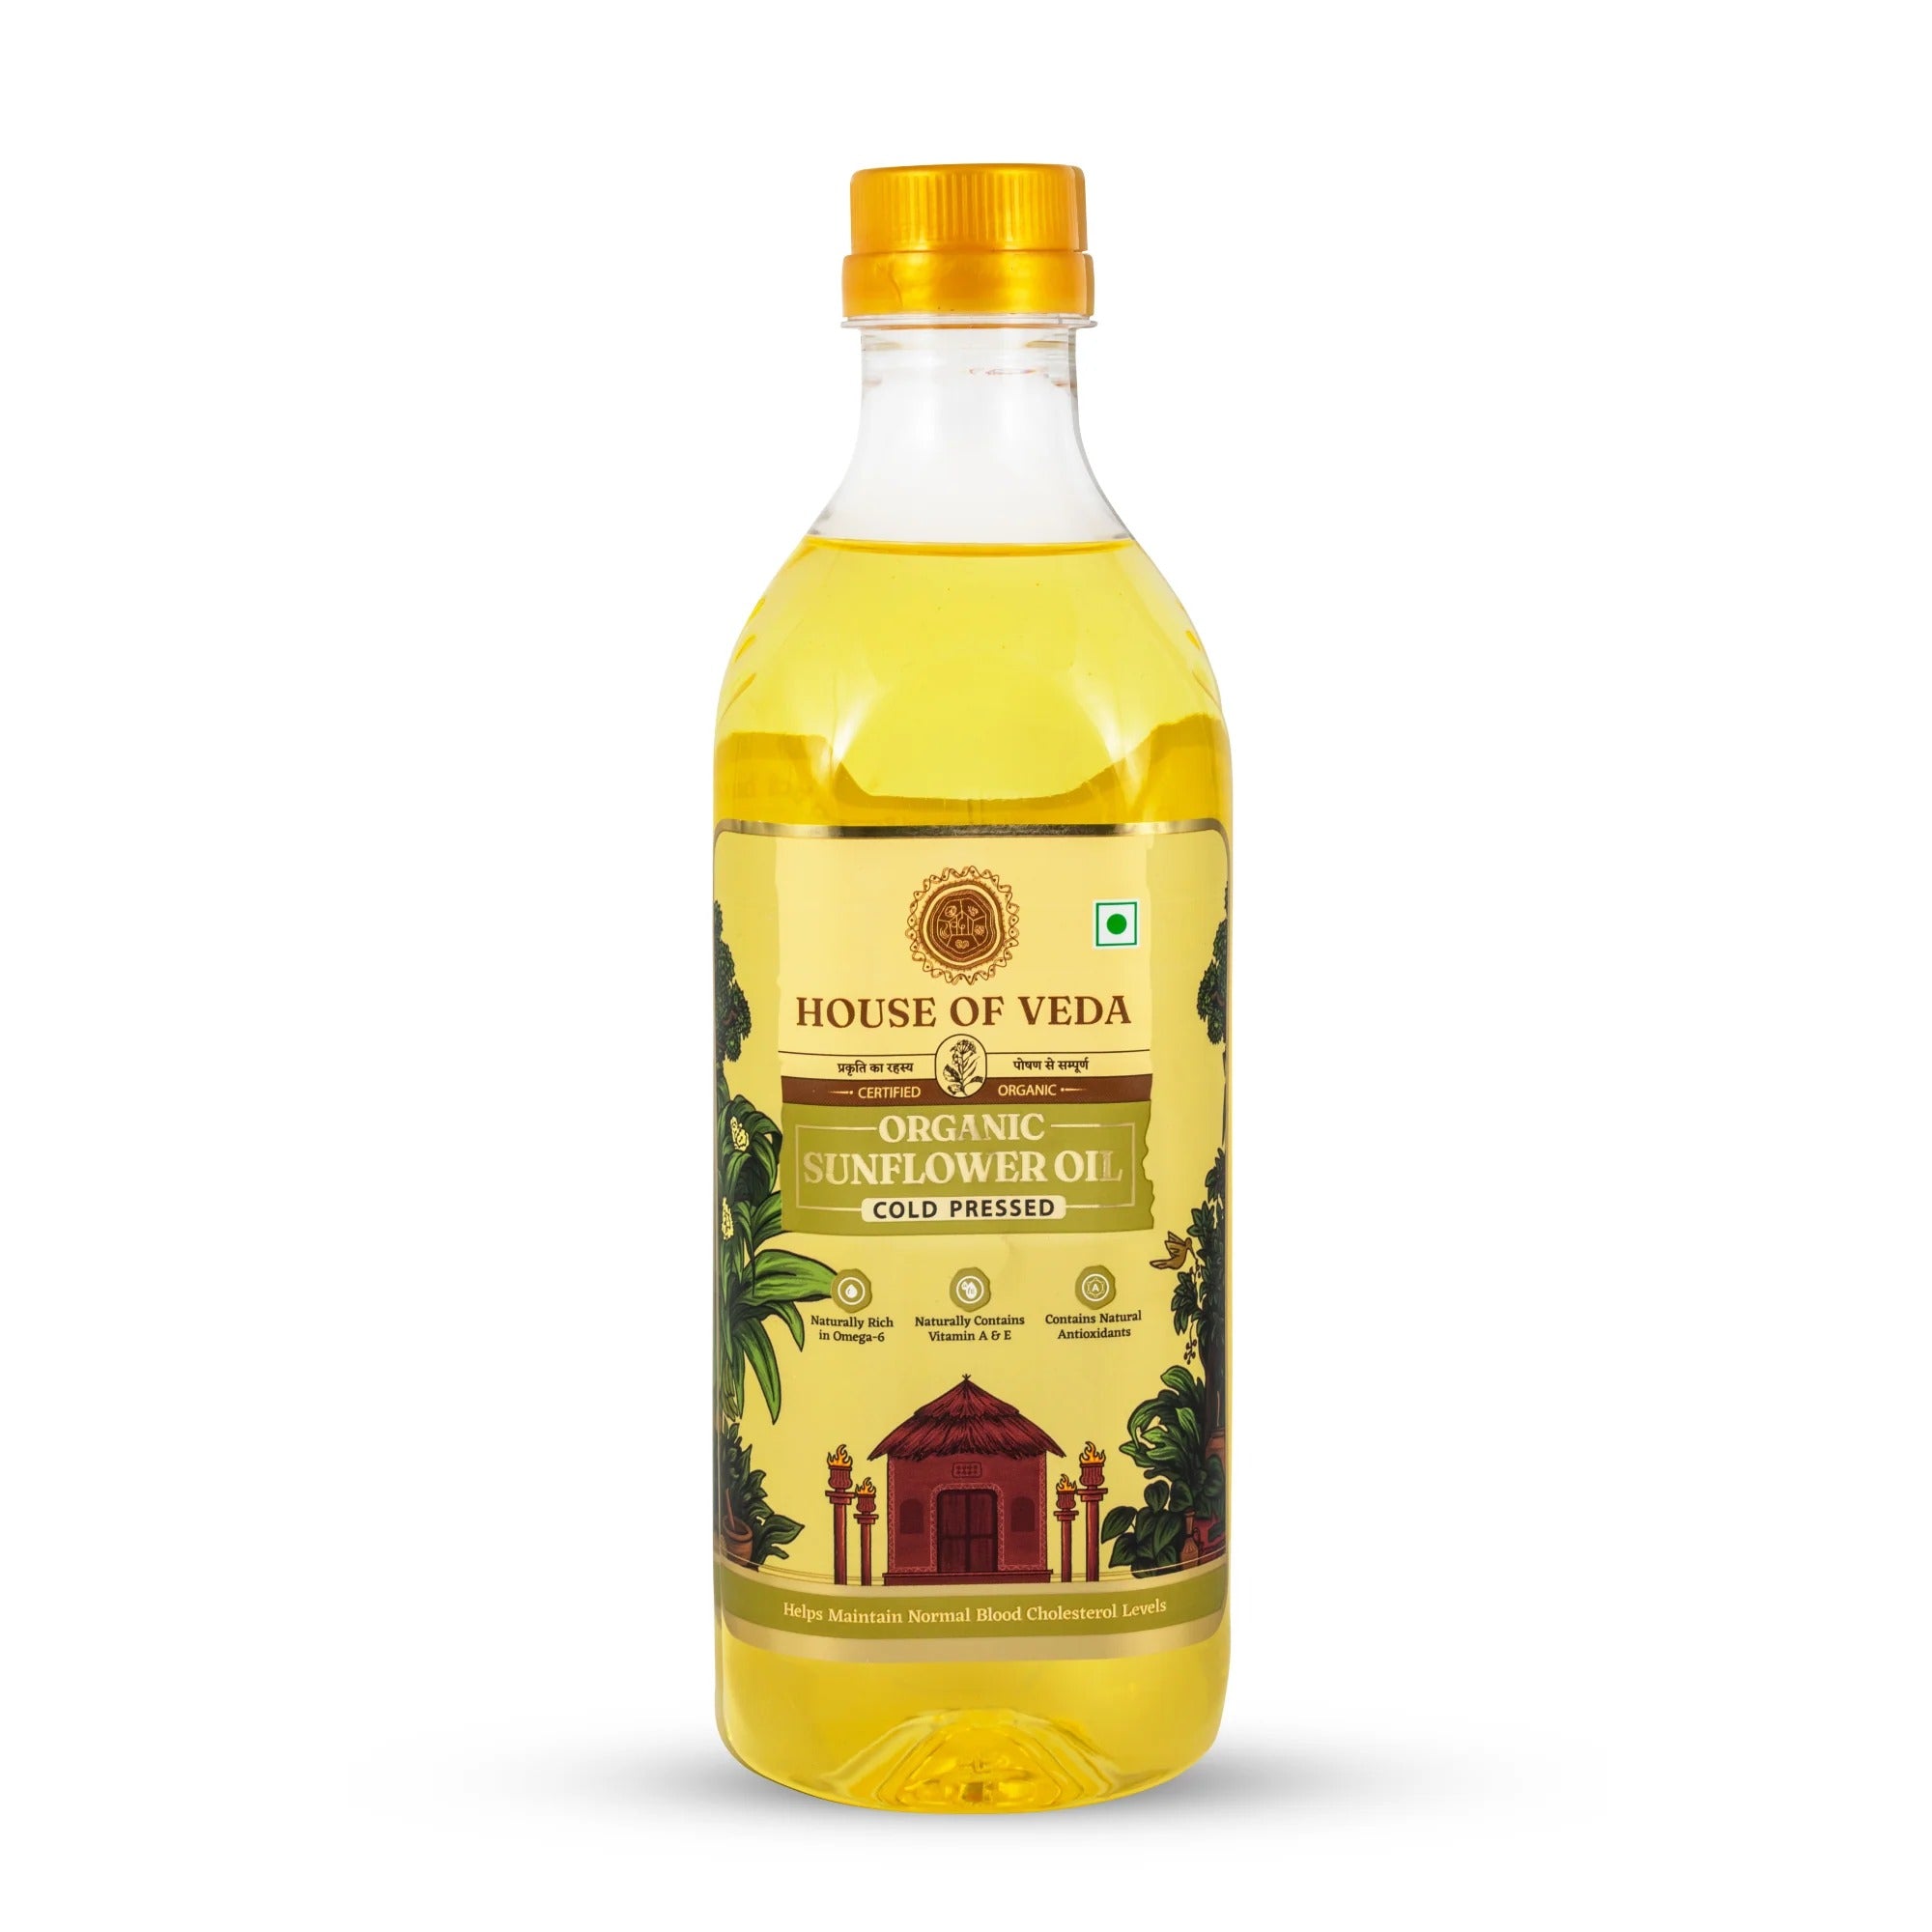 Organic Sunflower Oil Pack of 2